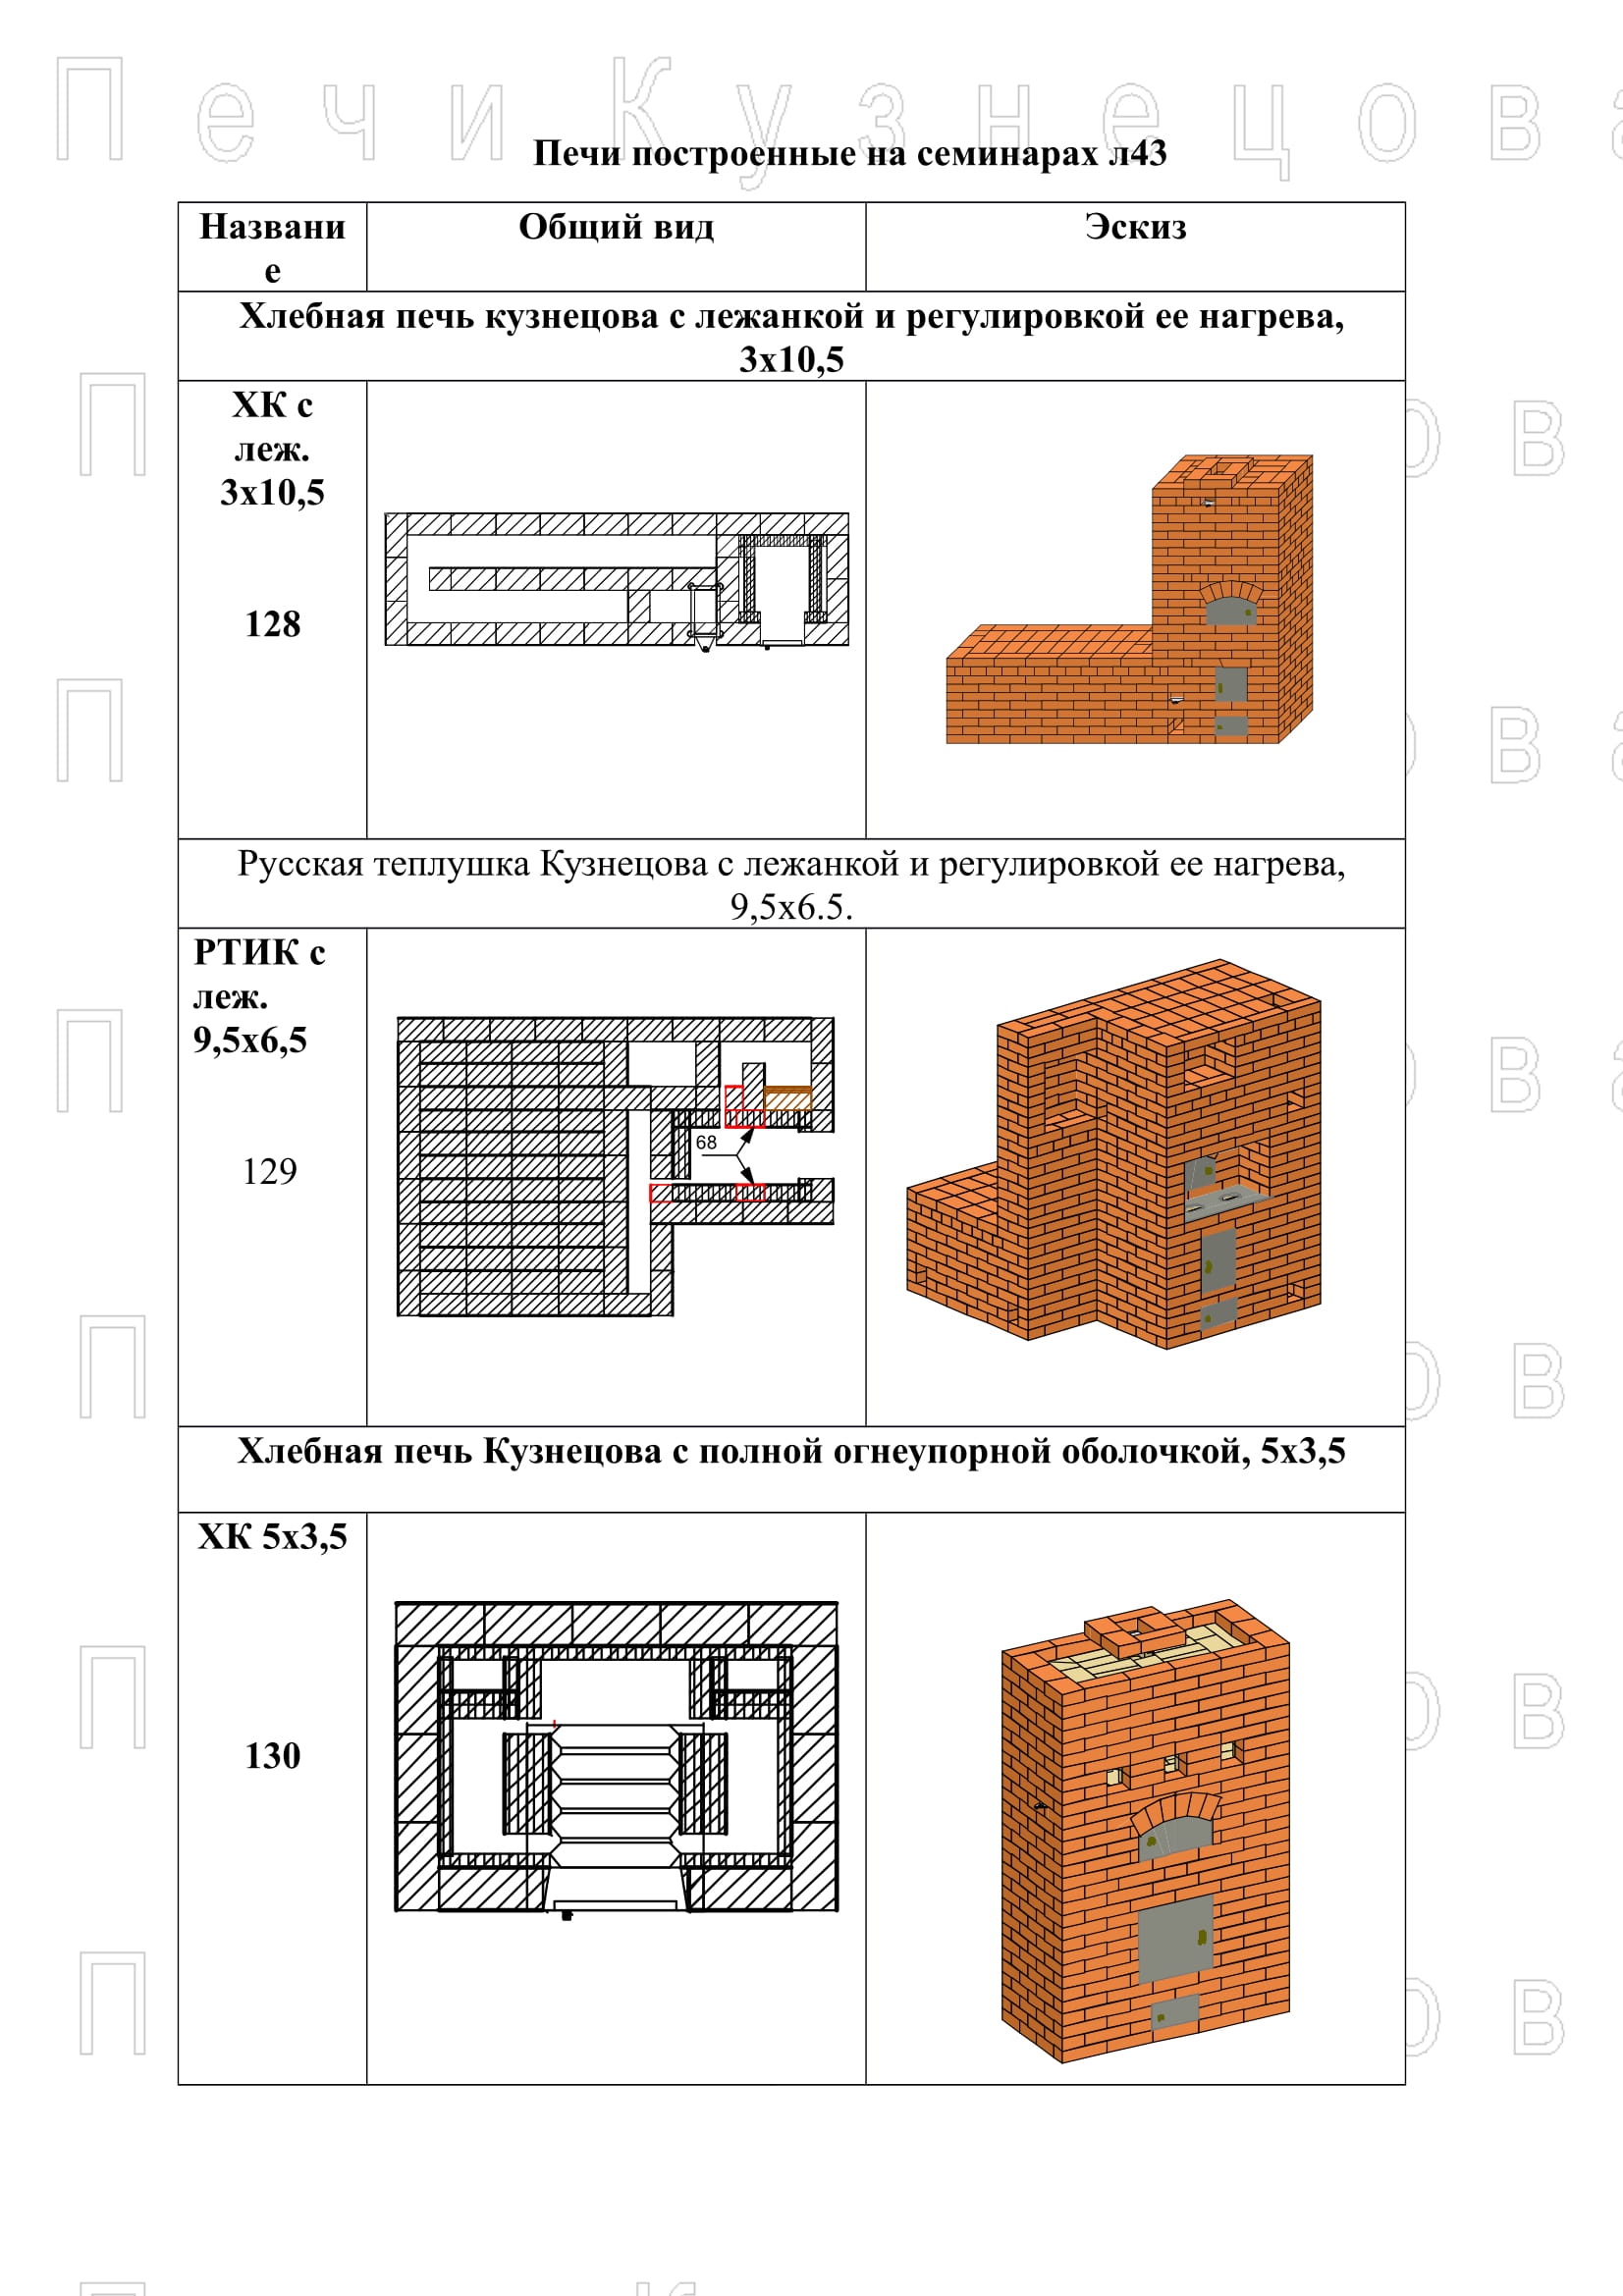 Колпаковая печь Кузнецова: порядовка, фото, схема